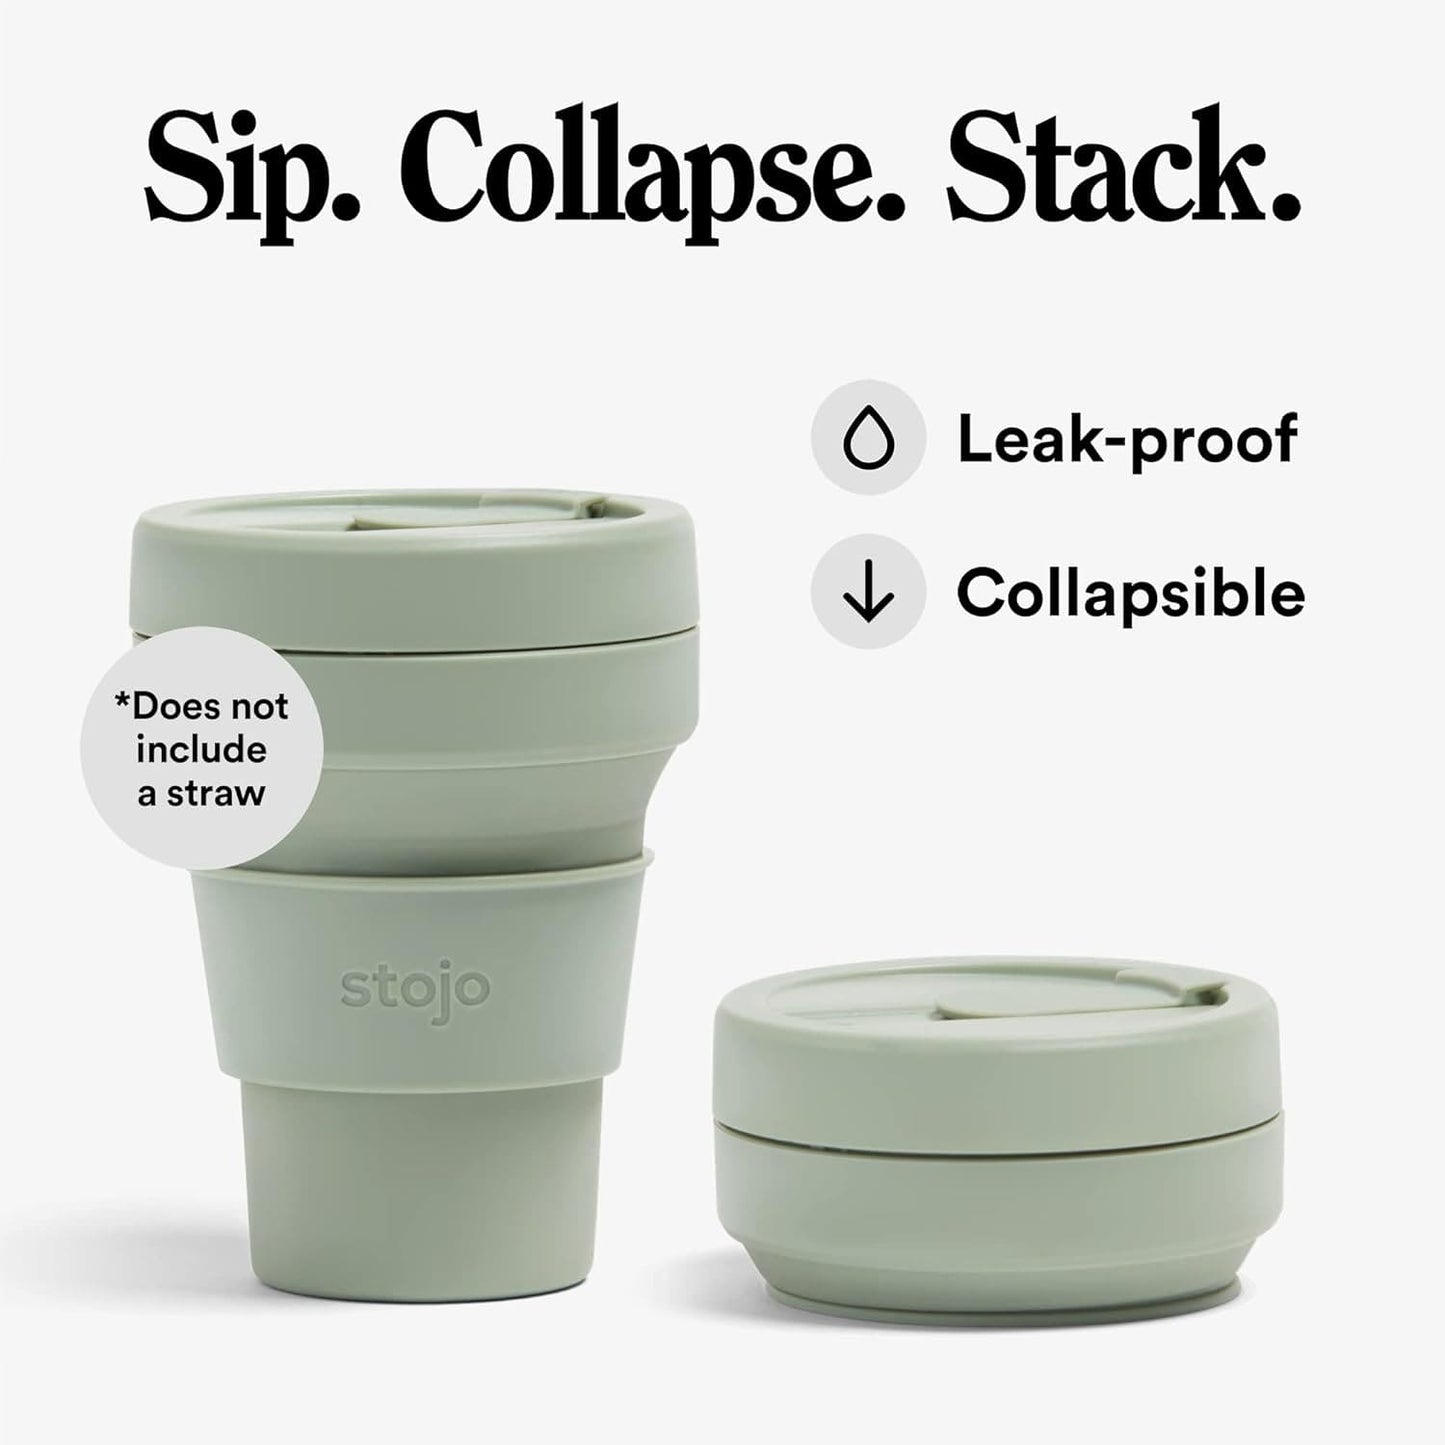 Stojo Coffee Cups Stojo Collapsible & Reusable Travel Mug 12oz/355ml - Sage